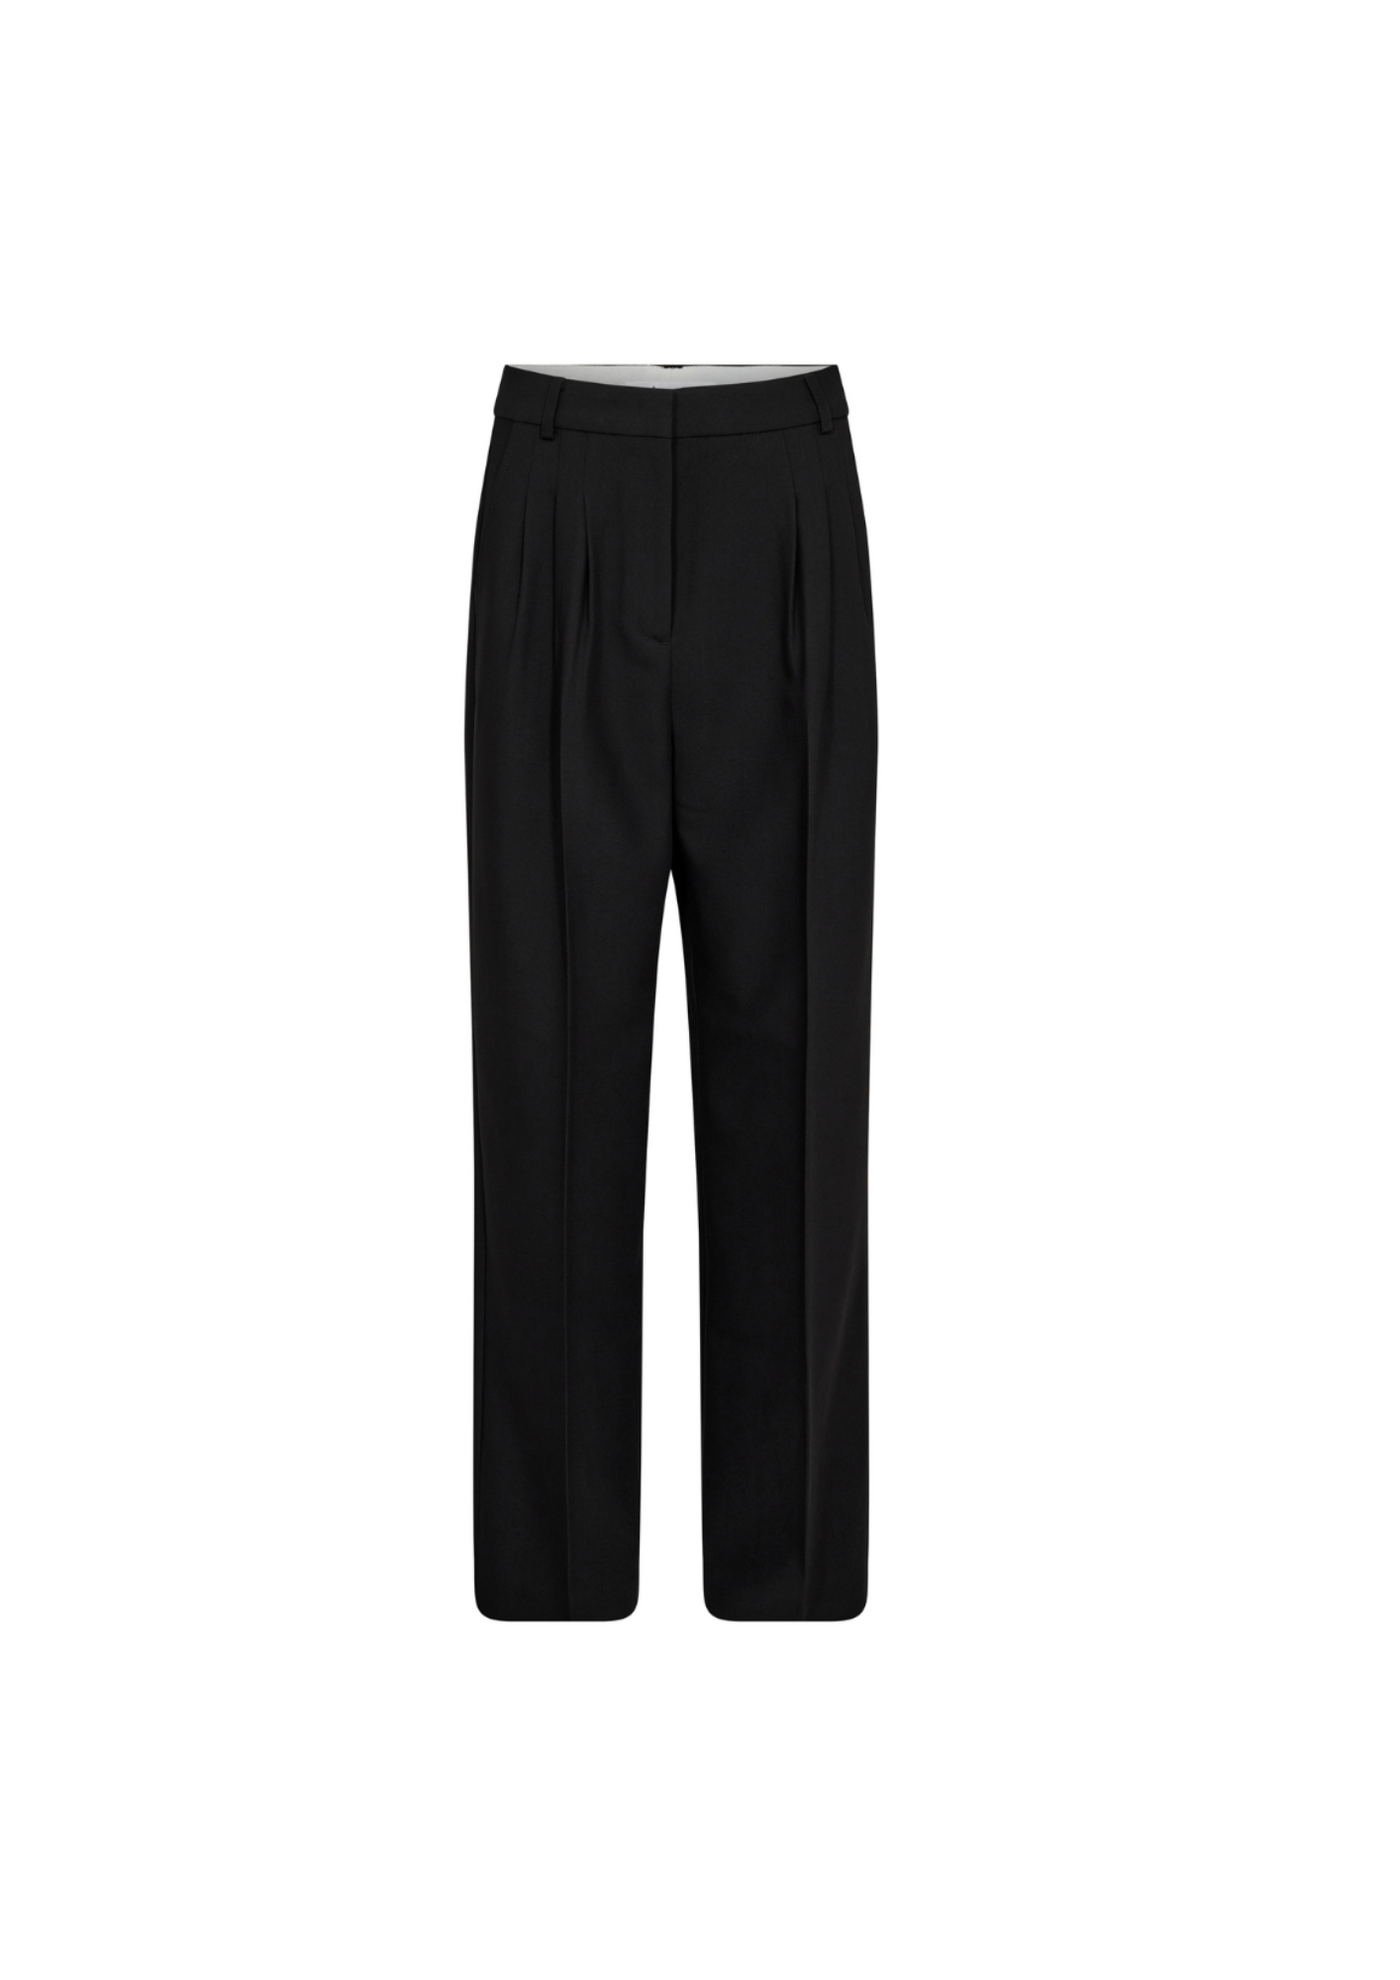 Co' Couture | VolaCC Long Pleat Pant Black